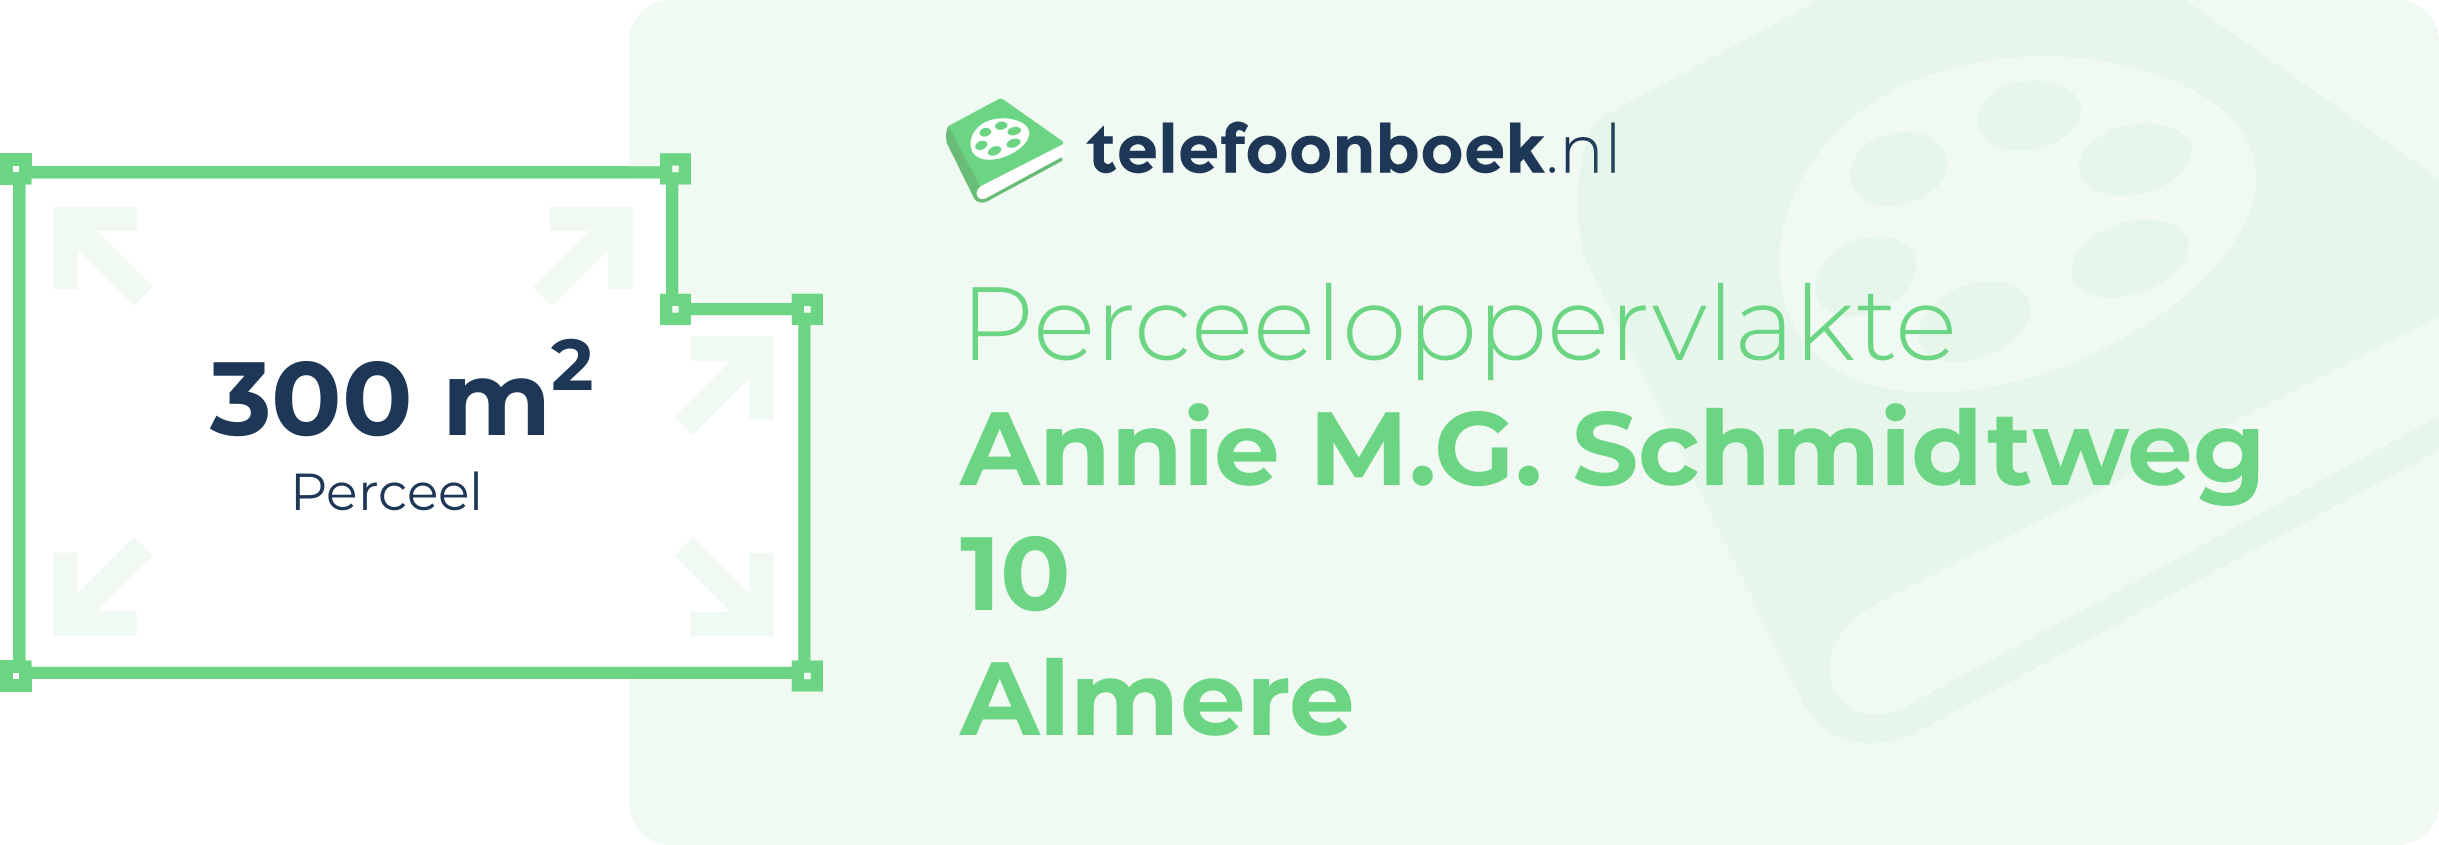 Perceeloppervlakte Annie M.G. Schmidtweg 10 Almere